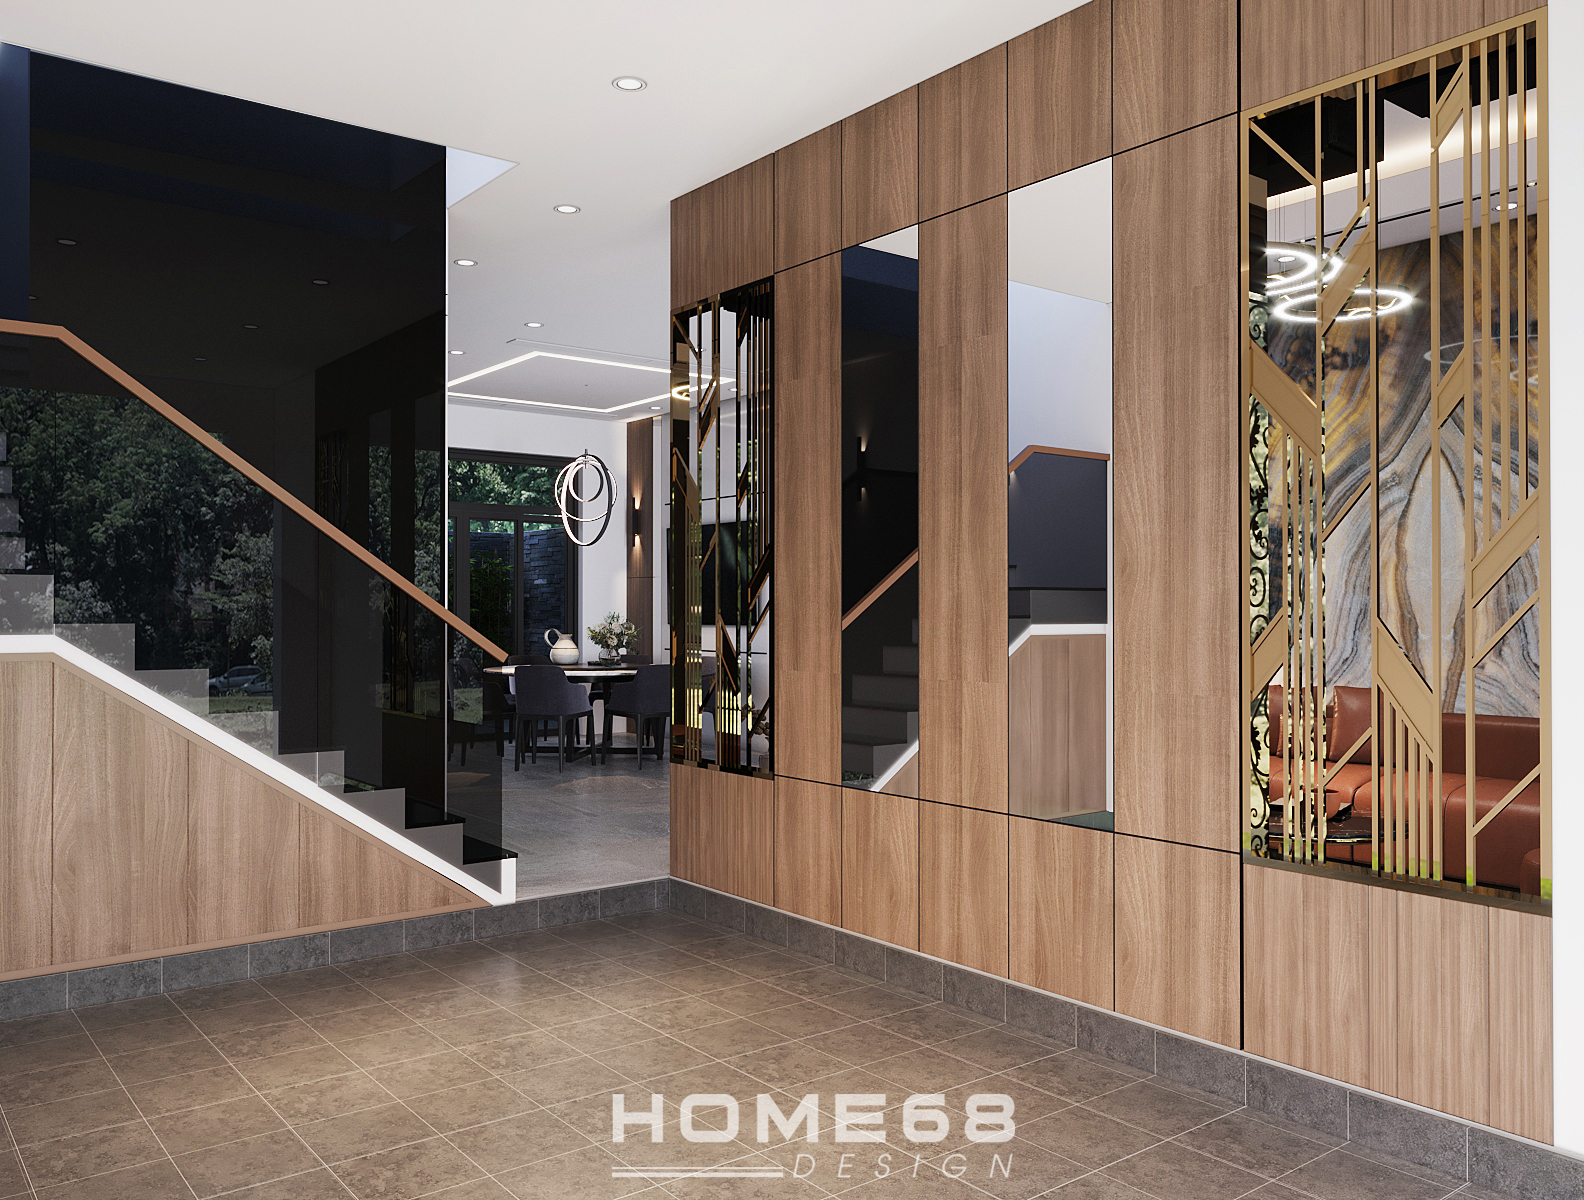 Cầu thang kính với tay vịn gỗ cao cấp với thiết kế hiện đại, đặc sắc - HOME68